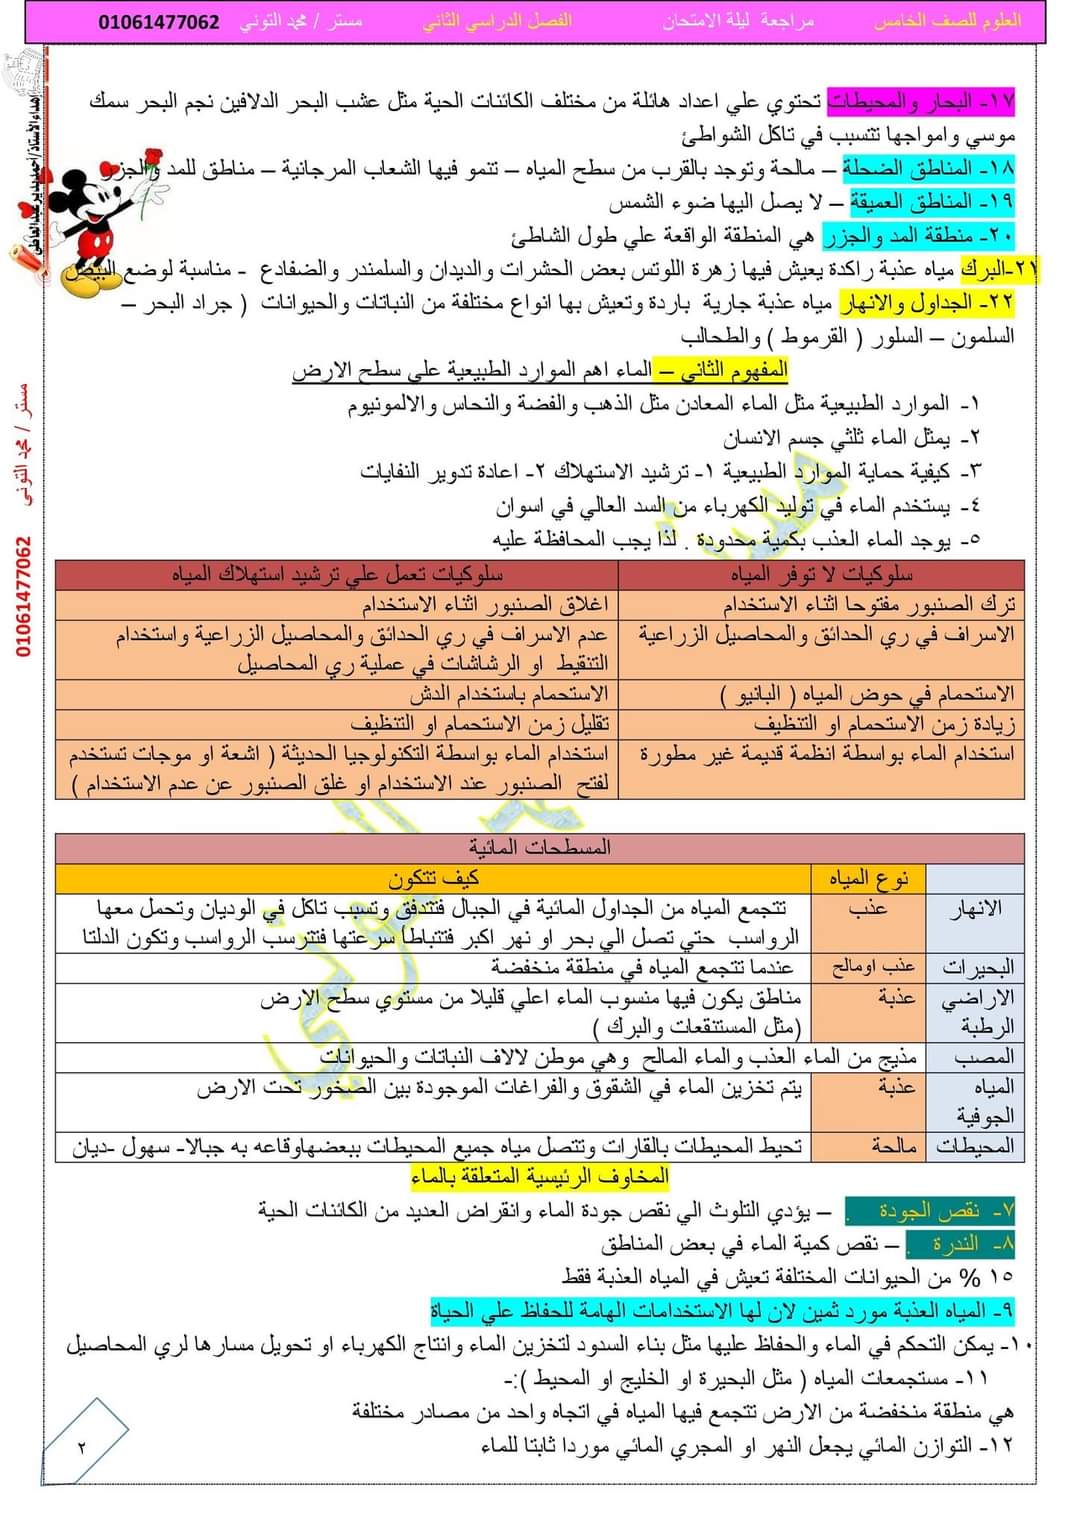 مذكرة مراجعة ليلة الامتحان علوم الصف الخامس الابتدائي الترم الثاني مستر محمد التوني